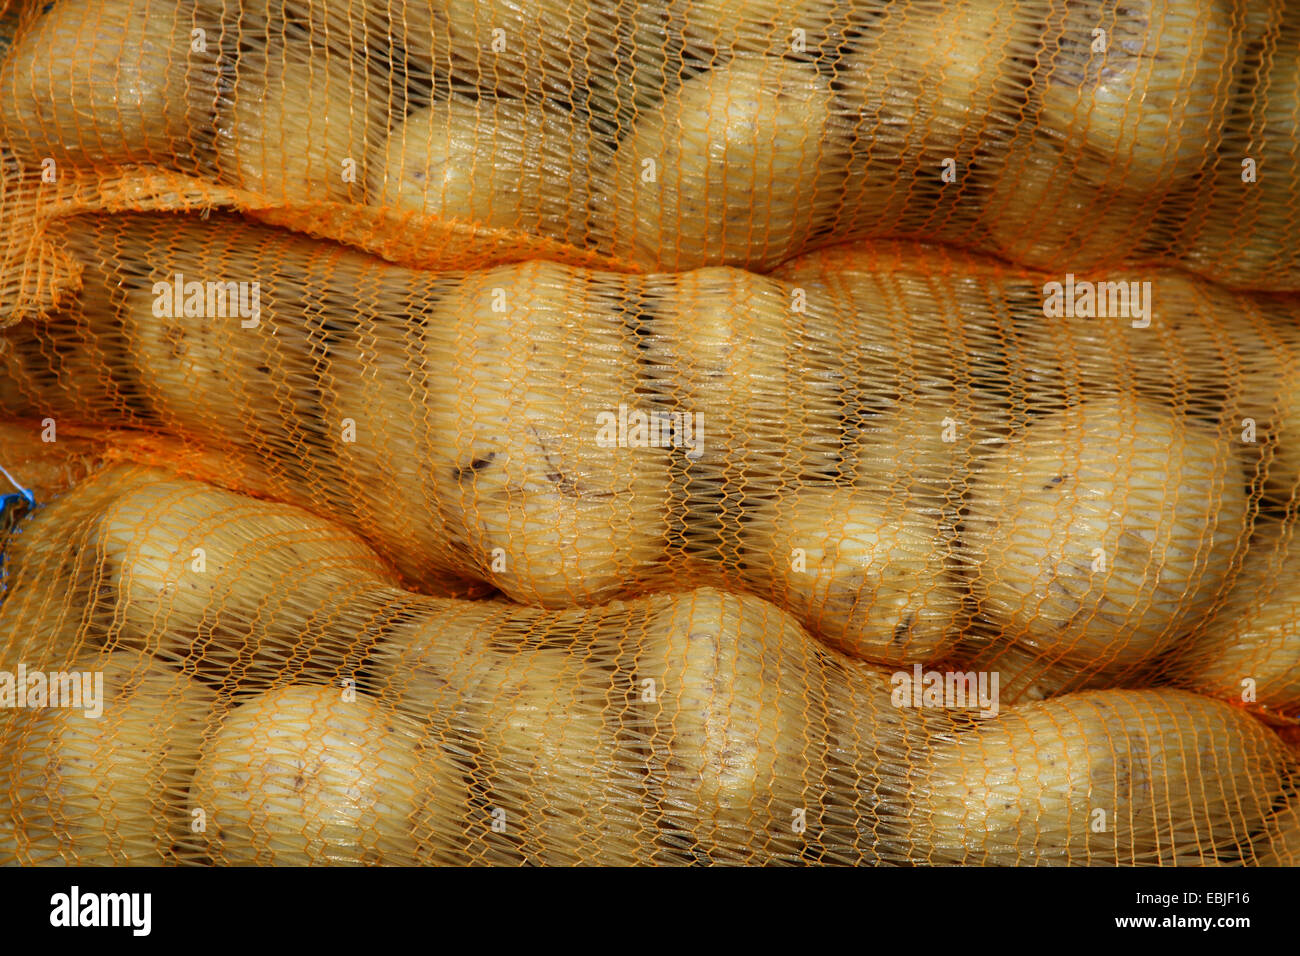 La pomme de terre (Solanum tuberosum), pile de sacs de pommes de terre, Allemagne Banque D'Images